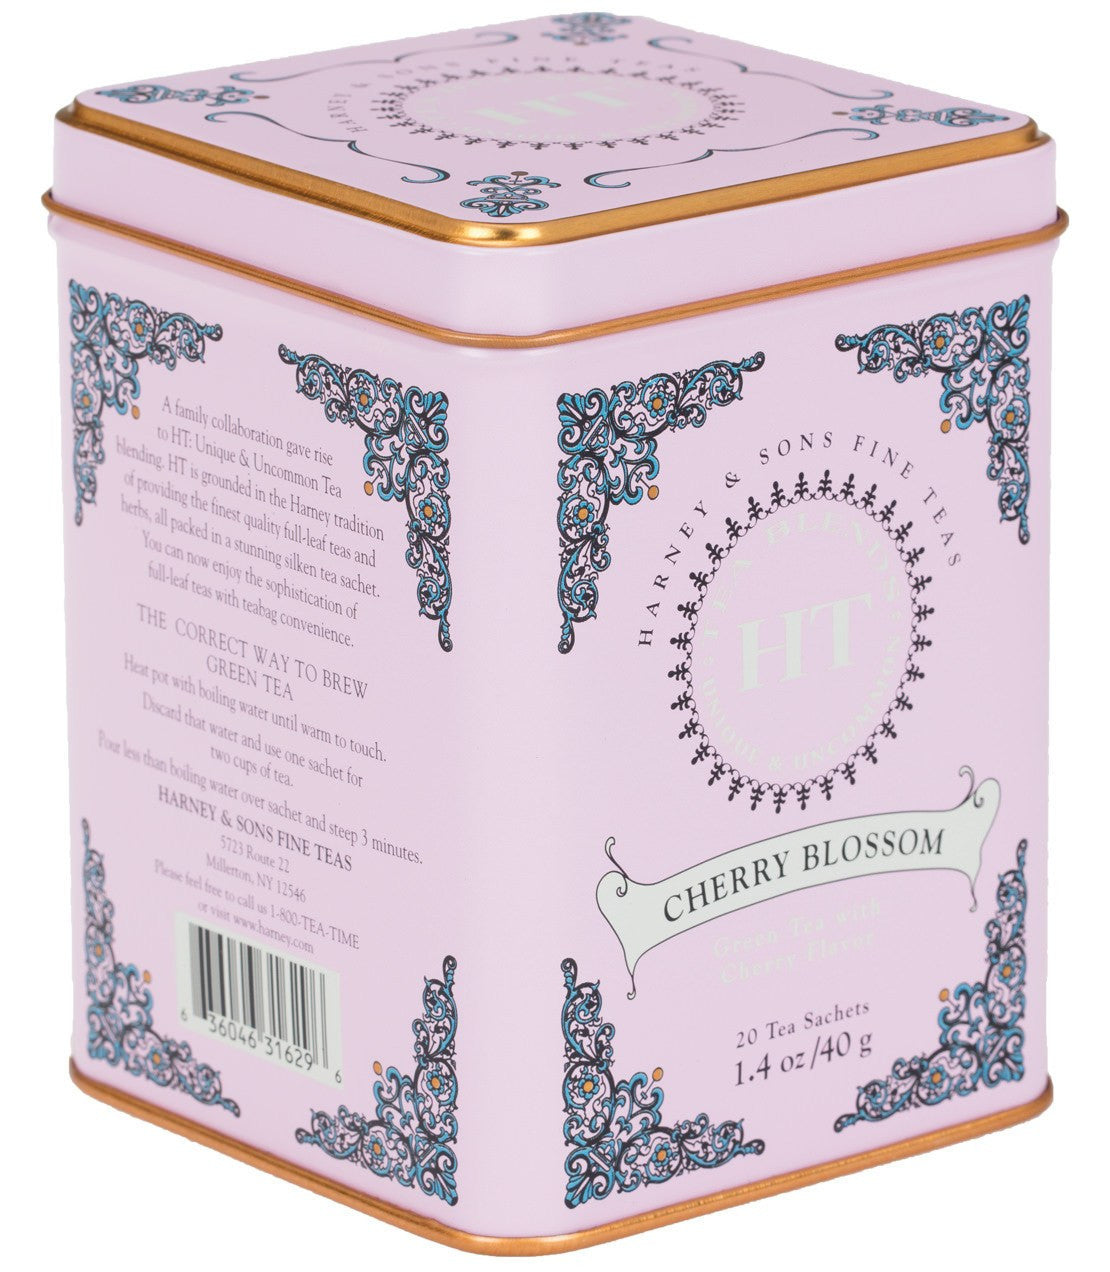 Cherry Blossom - Sachets HT Tin of 20 Sachets - Harney & Sons Fine Teas